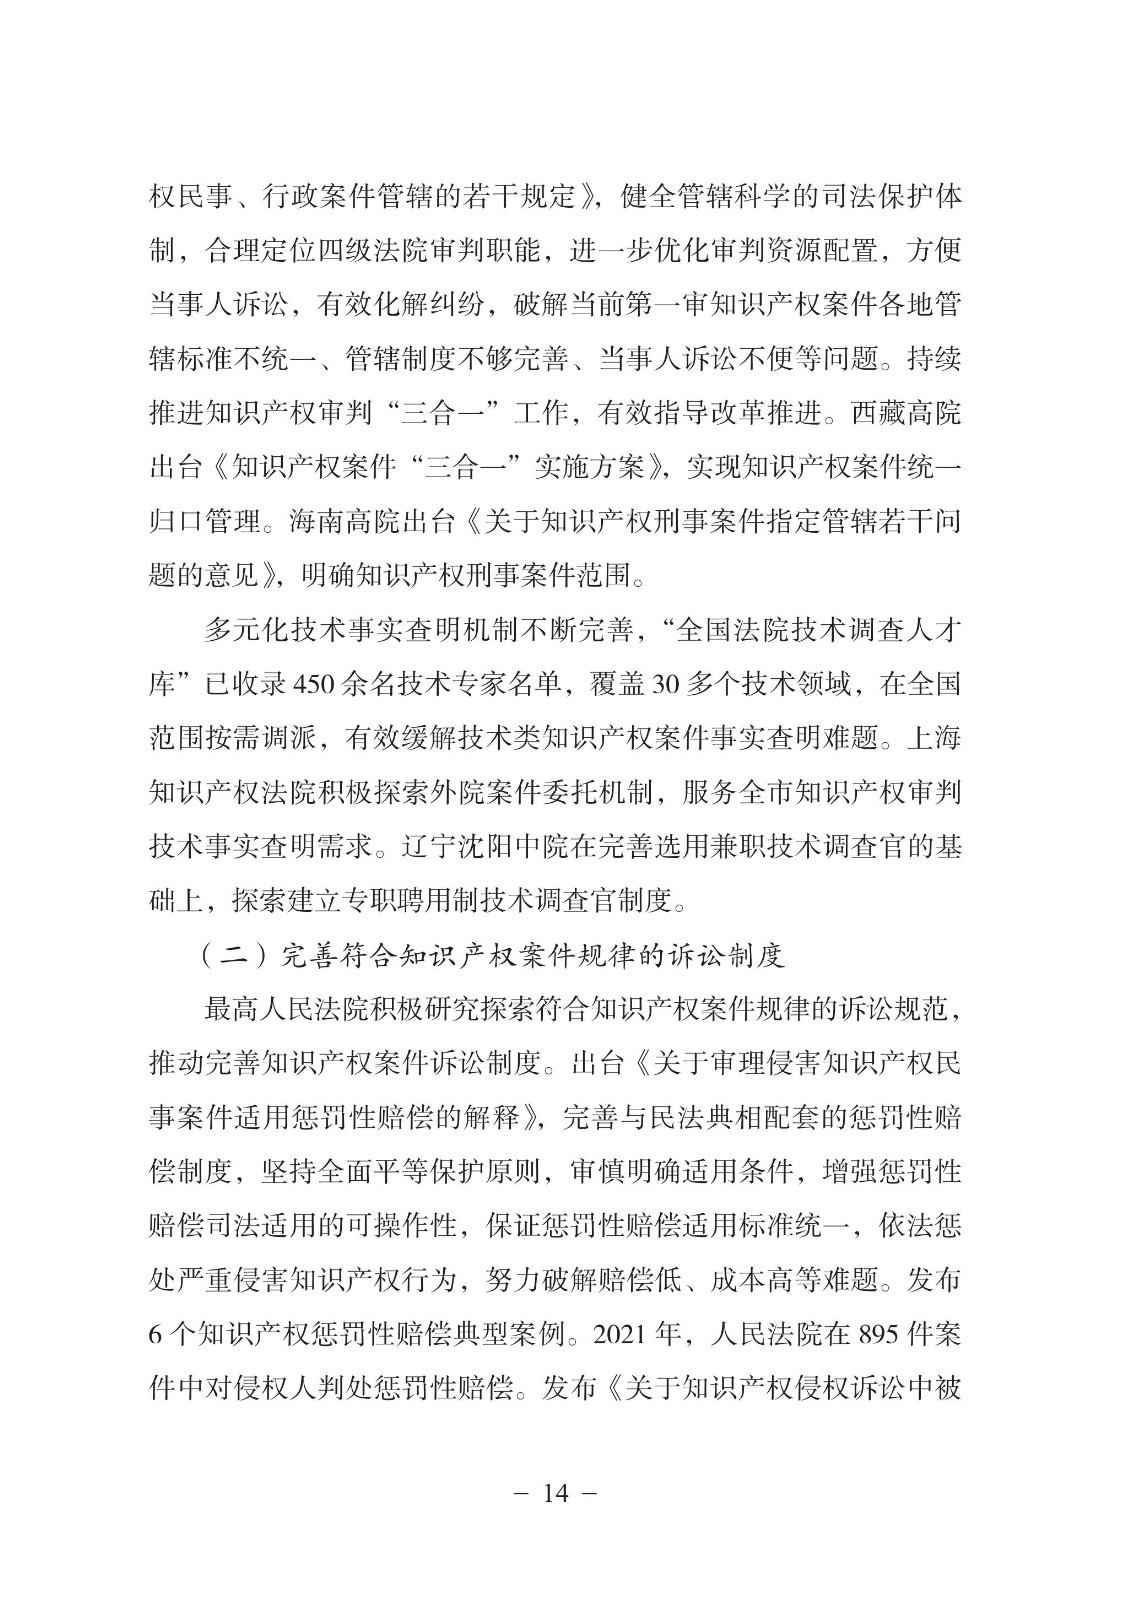 中国法院知识产权司法保护状况（2021年）全文发布！